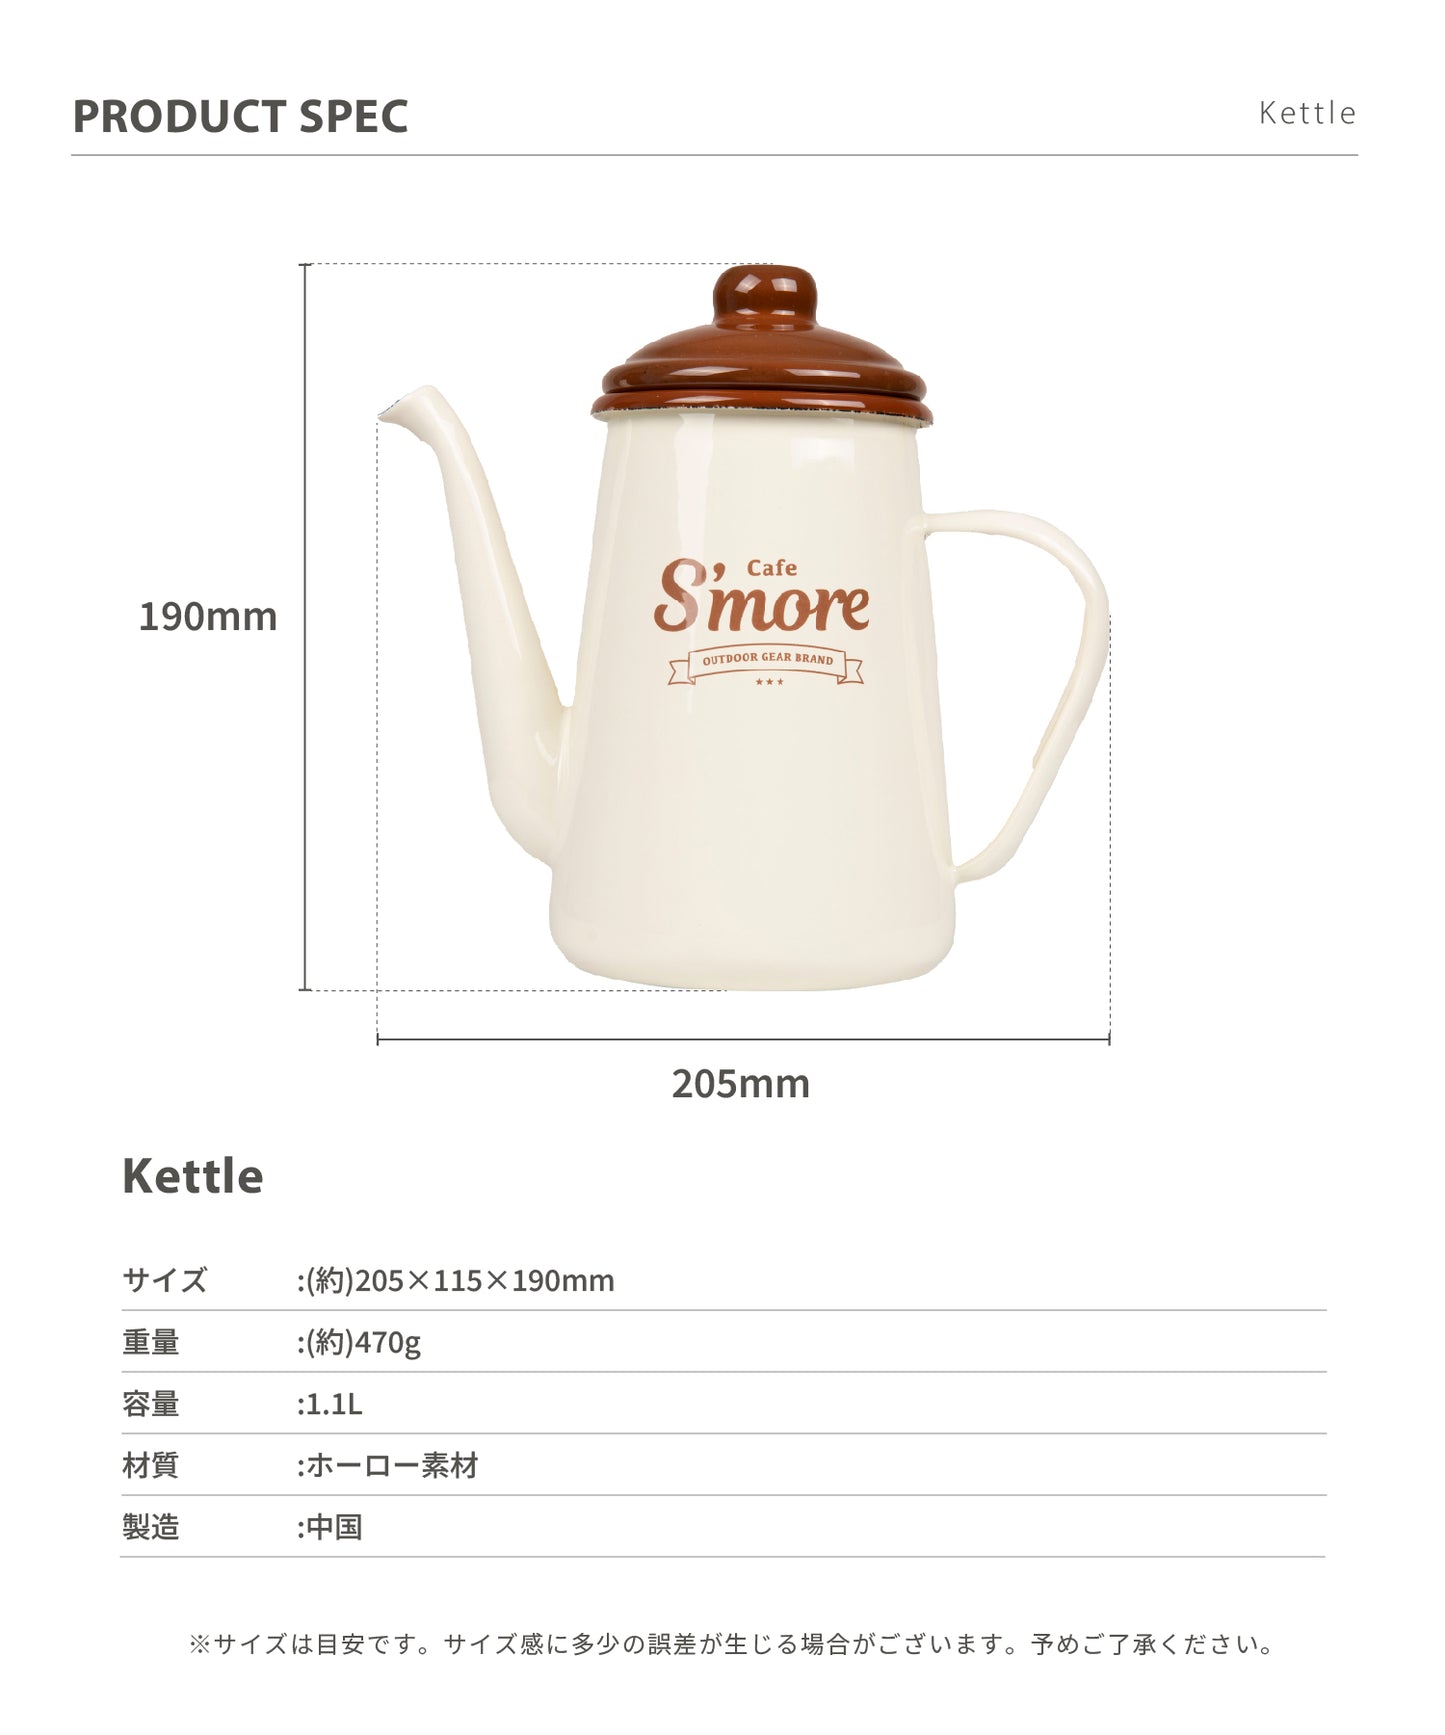 New!! café s'more kettle